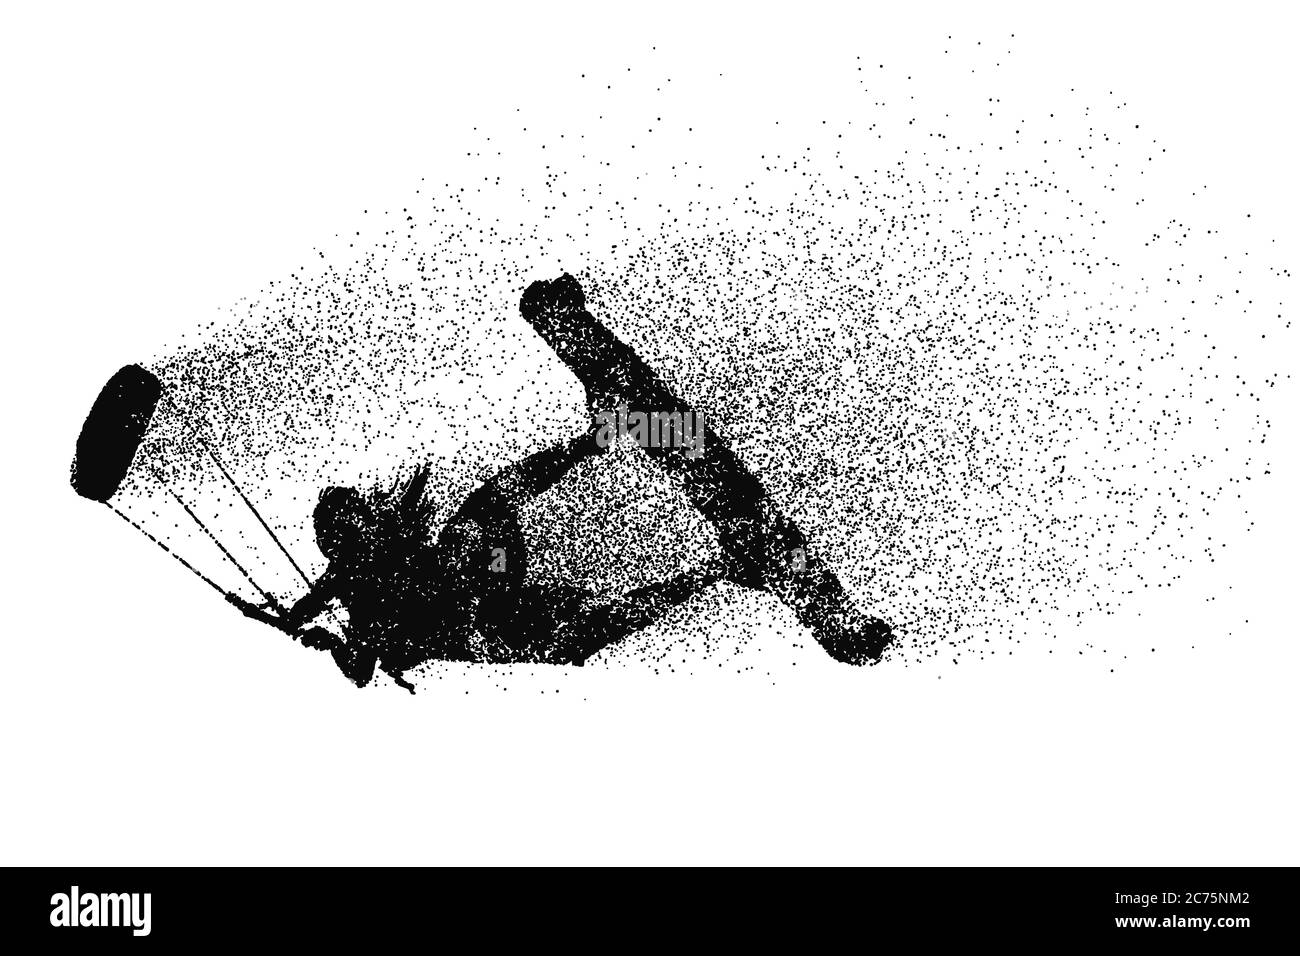 Kitesurf et kiteboarding. Silhouette d'un kitesurfer. Une femme en saut fait un tour. La concurrence aérienne. Illustration vectorielle. Merci de votre attention Illustration de Vecteur